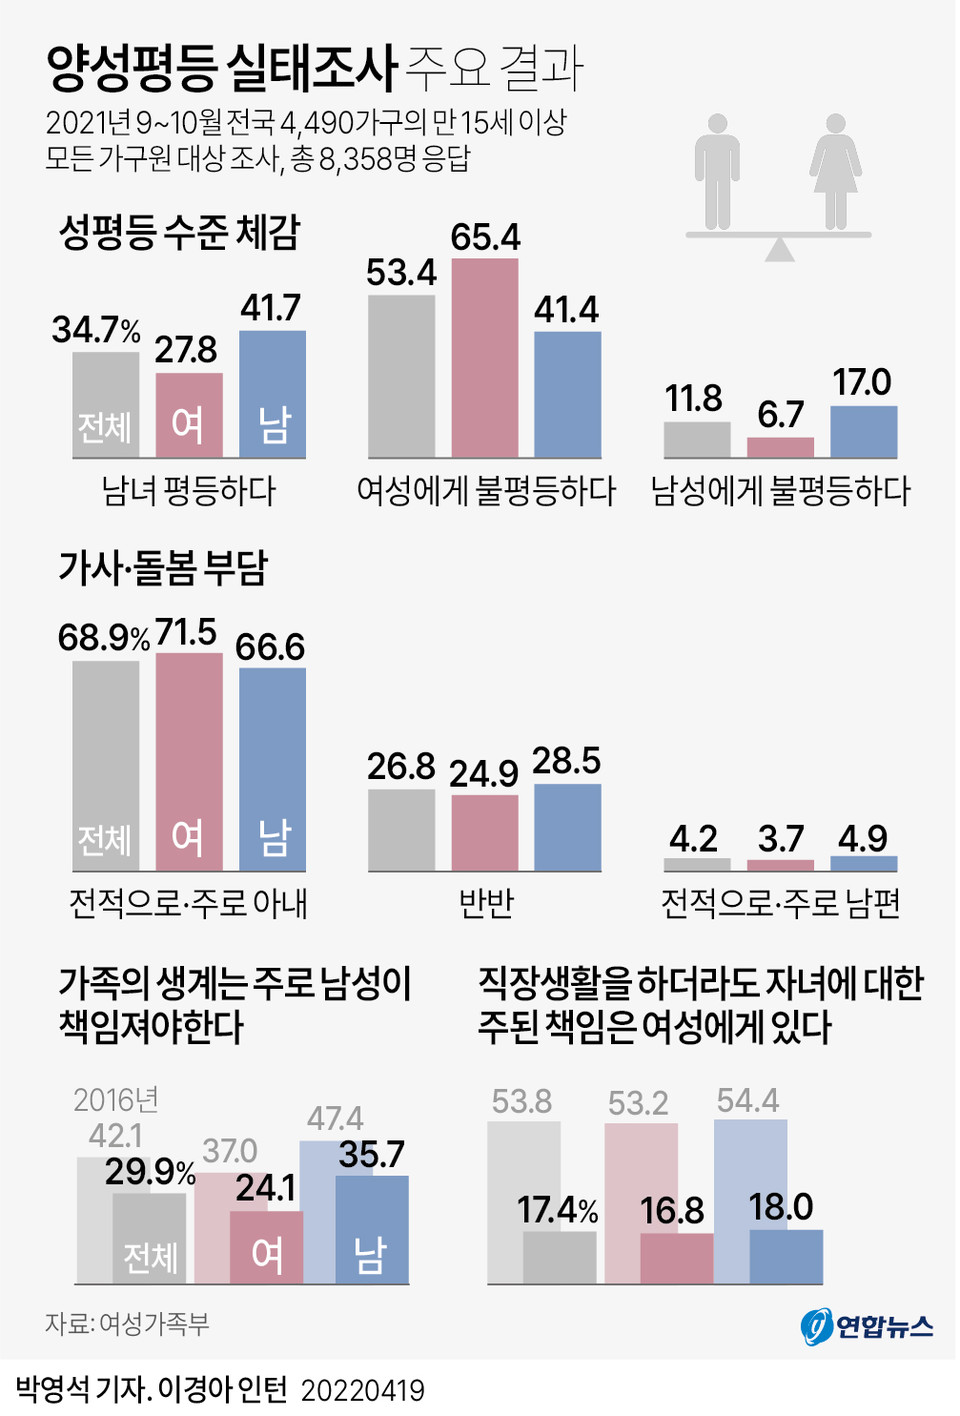 (서울=연합뉴스) 박영석 기자 = 20대 여성 10명 가운데 7명, 20대 남성 10명 가운데 3명은 '한국 사회가 여성들에게 불평등하다고 생각하는 것으로 나타났다. 여성가족부는 이런 내용을 담은 '2021년 양성평등 실태조사' 결과를 지난 4월 19일 발표했다.